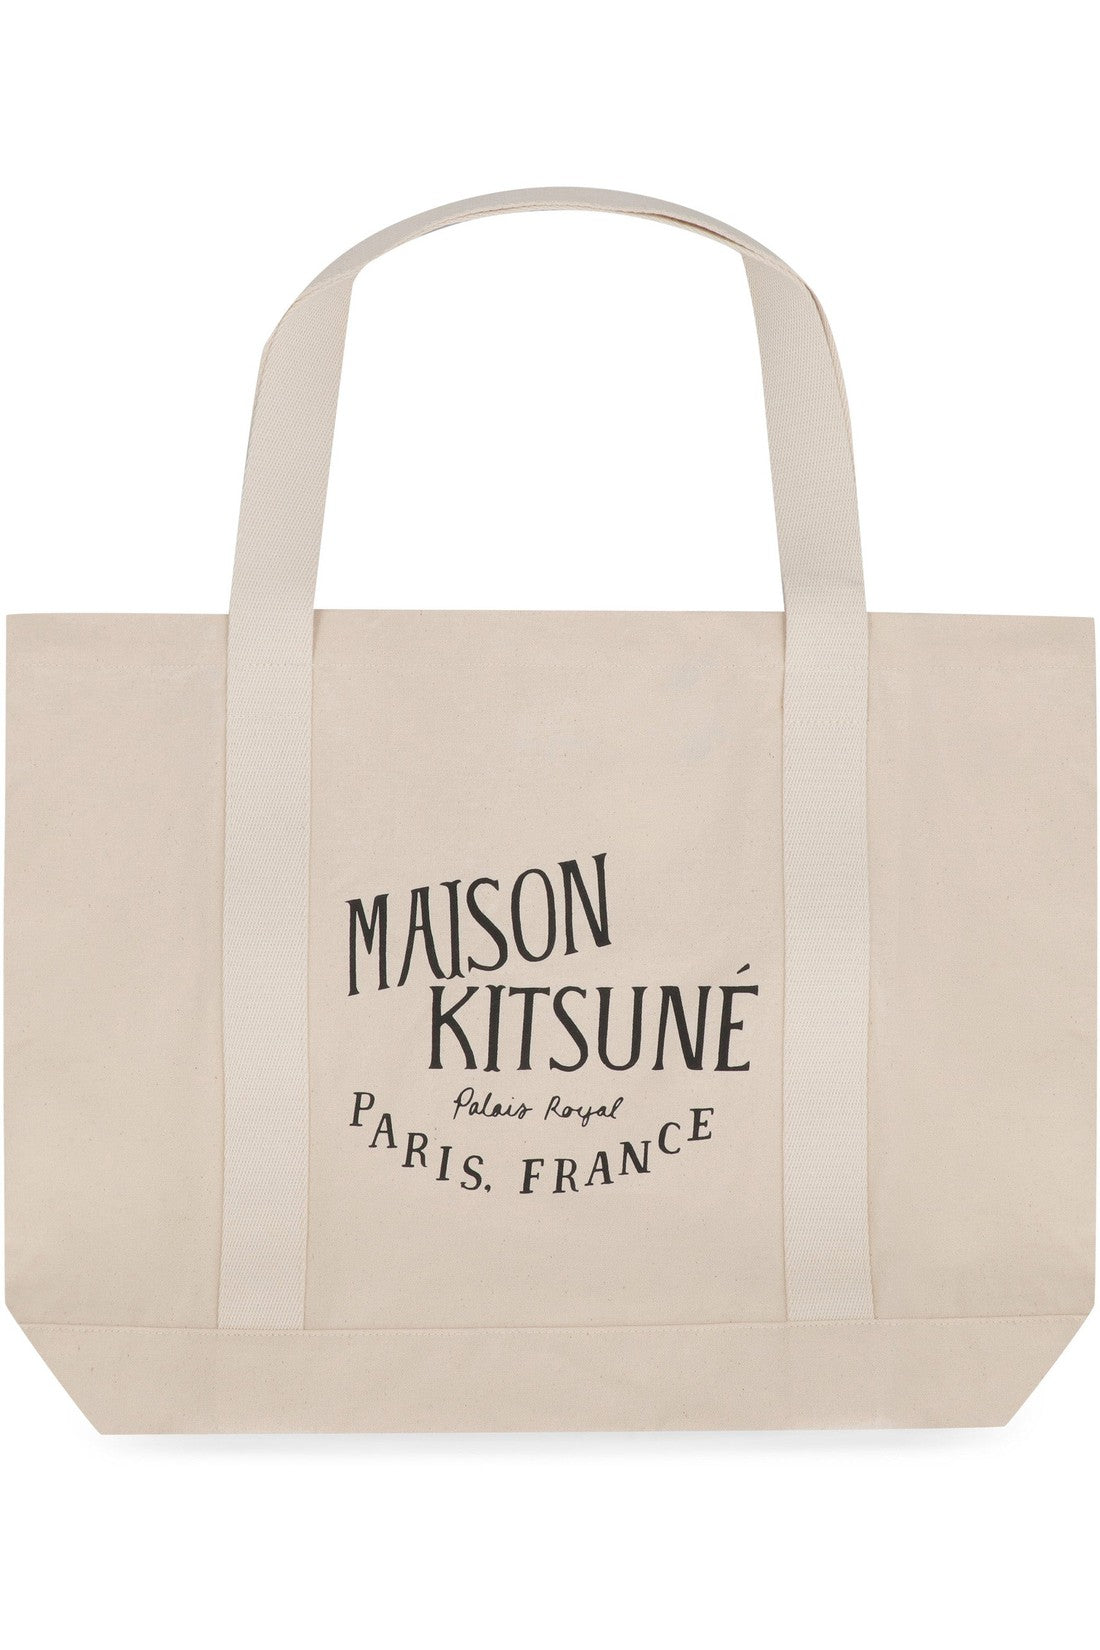 Maison Kitsuné-OUTLET-SALE-Canvas tote bag-ARCHIVIST